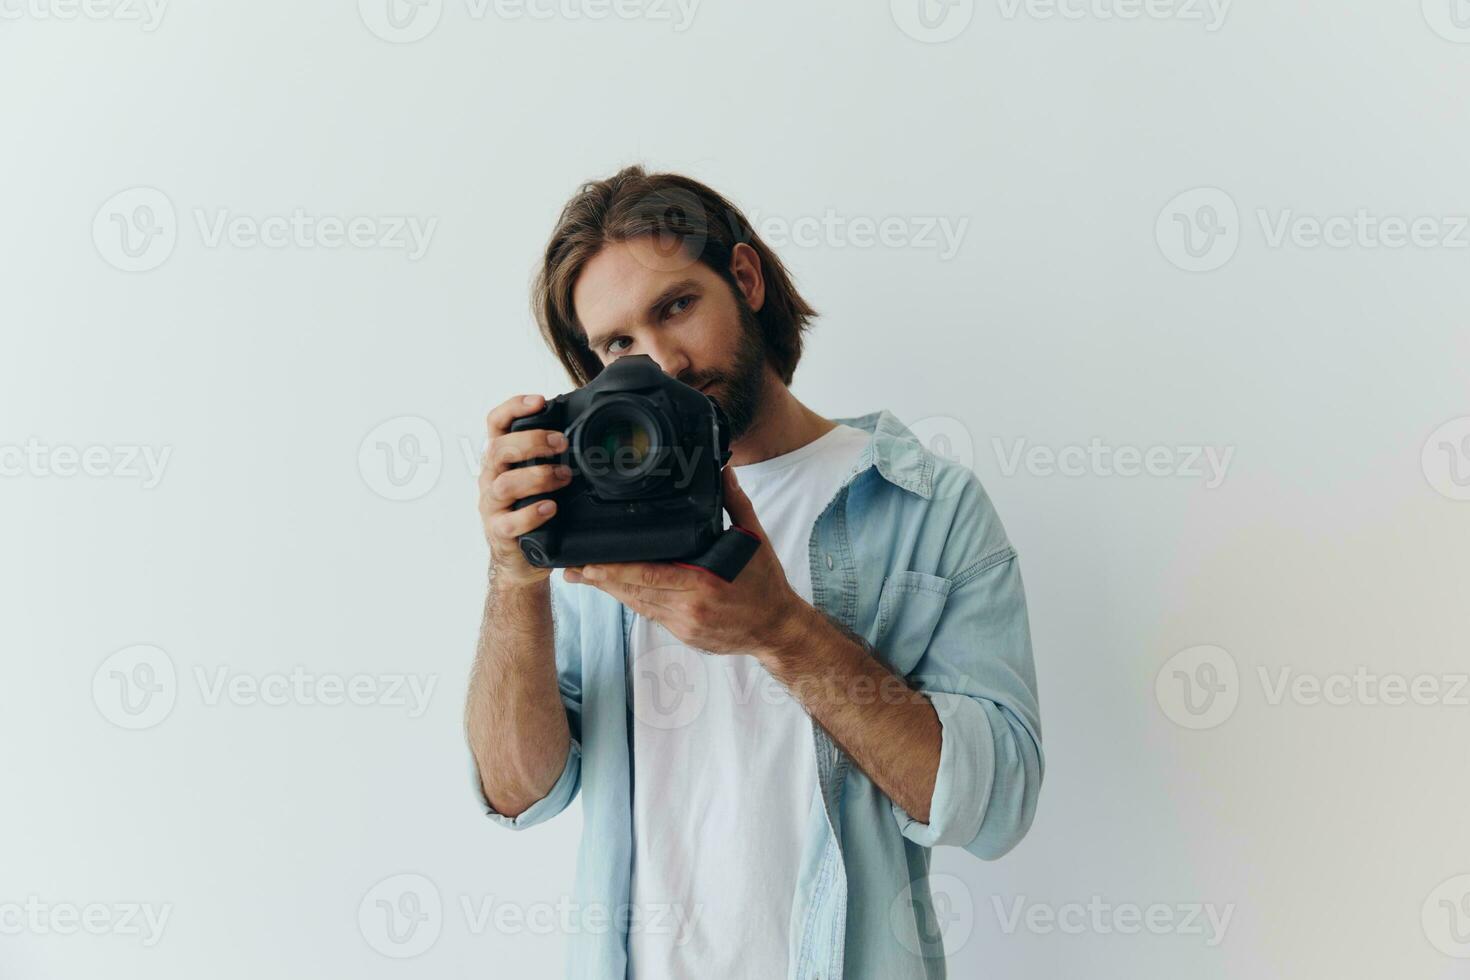 Mens hipster fotograaf in een studio tegen een wit achtergrond Holding een professioneel camera en instelling het omhoog voordat schieten. levensstijl werk net zo een freelance fotograaf foto